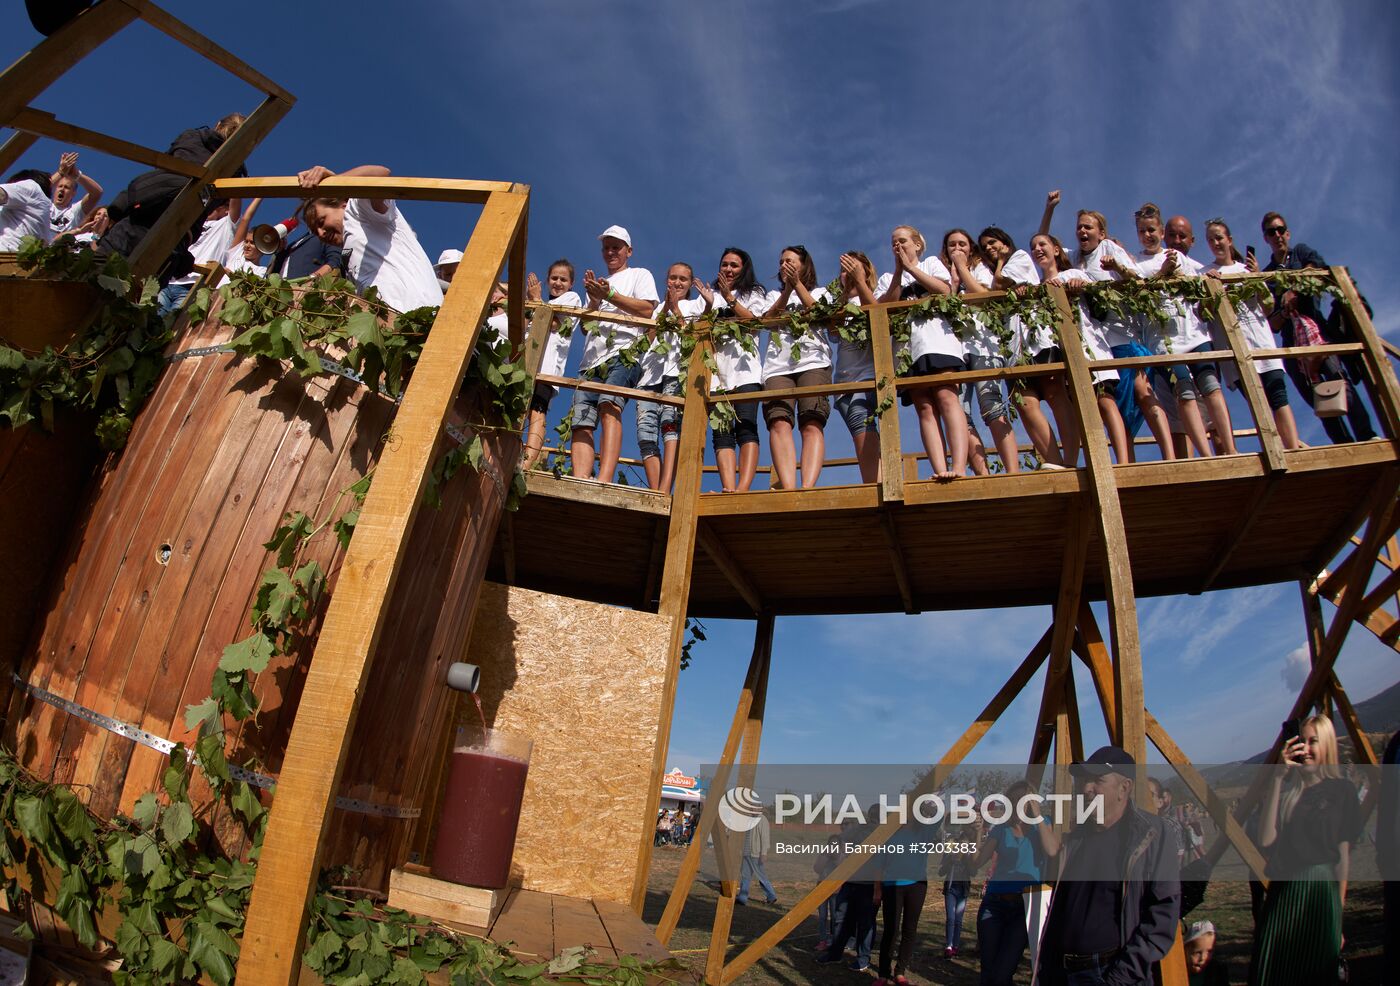 Фестиваль сбора урожая и виноделия #WineFest в Севастополе